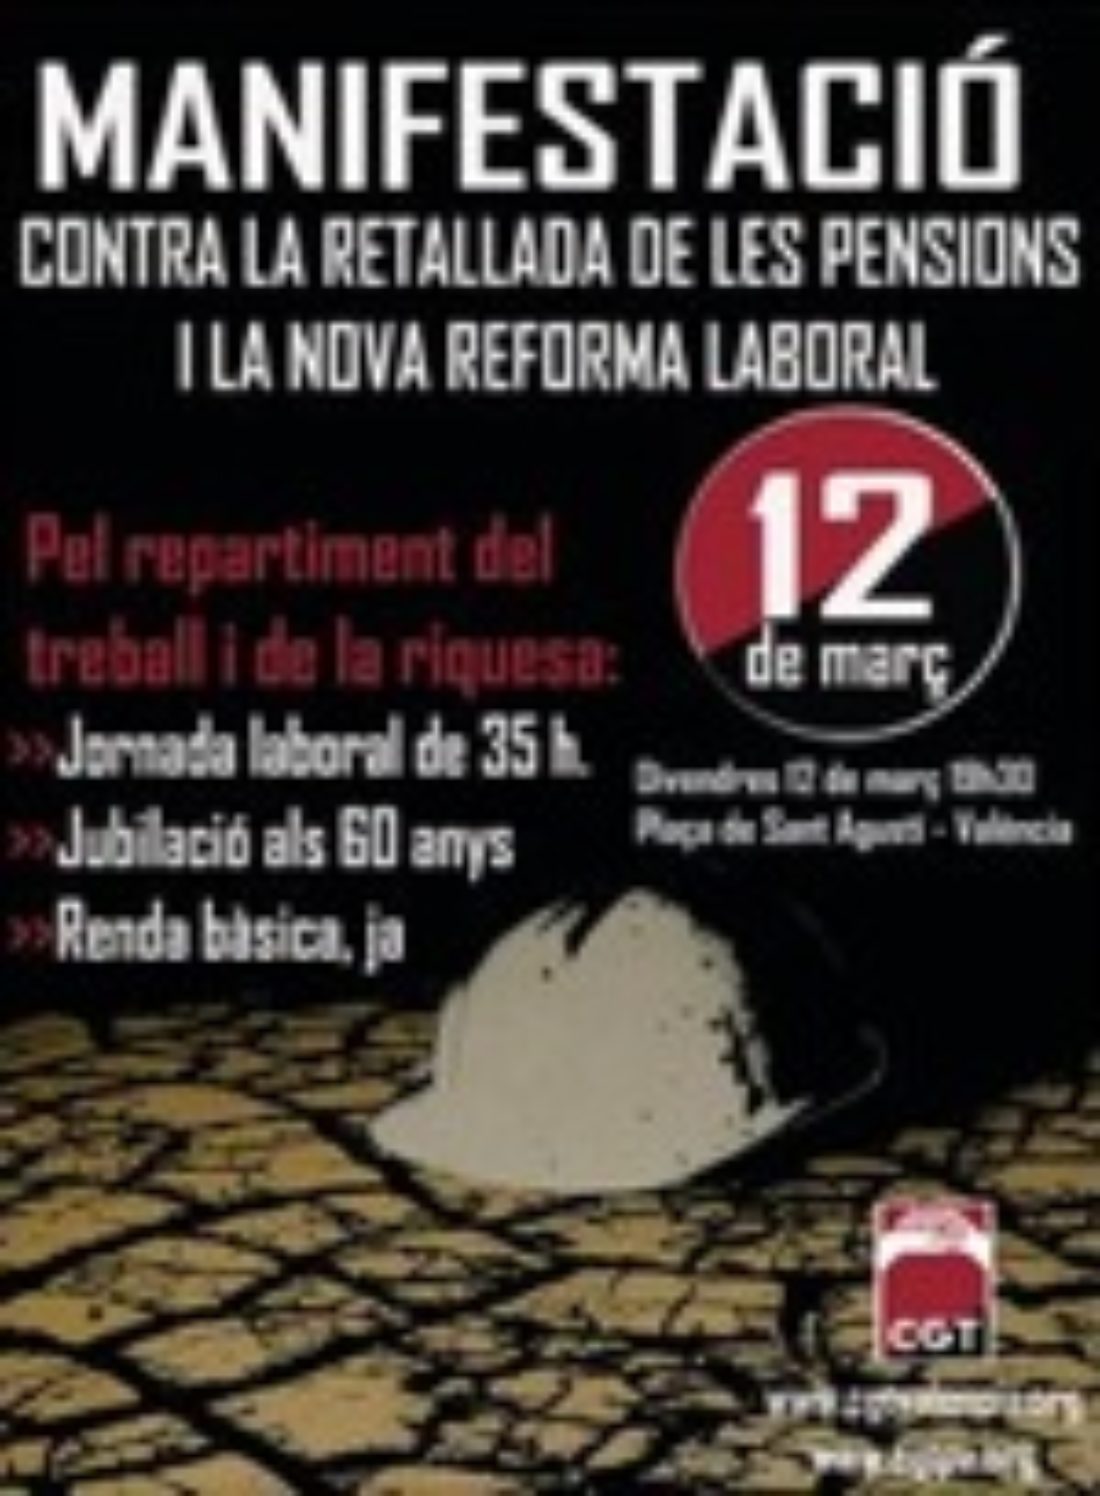 12 de Marzo, Valencia : Manifestación contra la nueva reforma laboral y el recorte de las pensiones